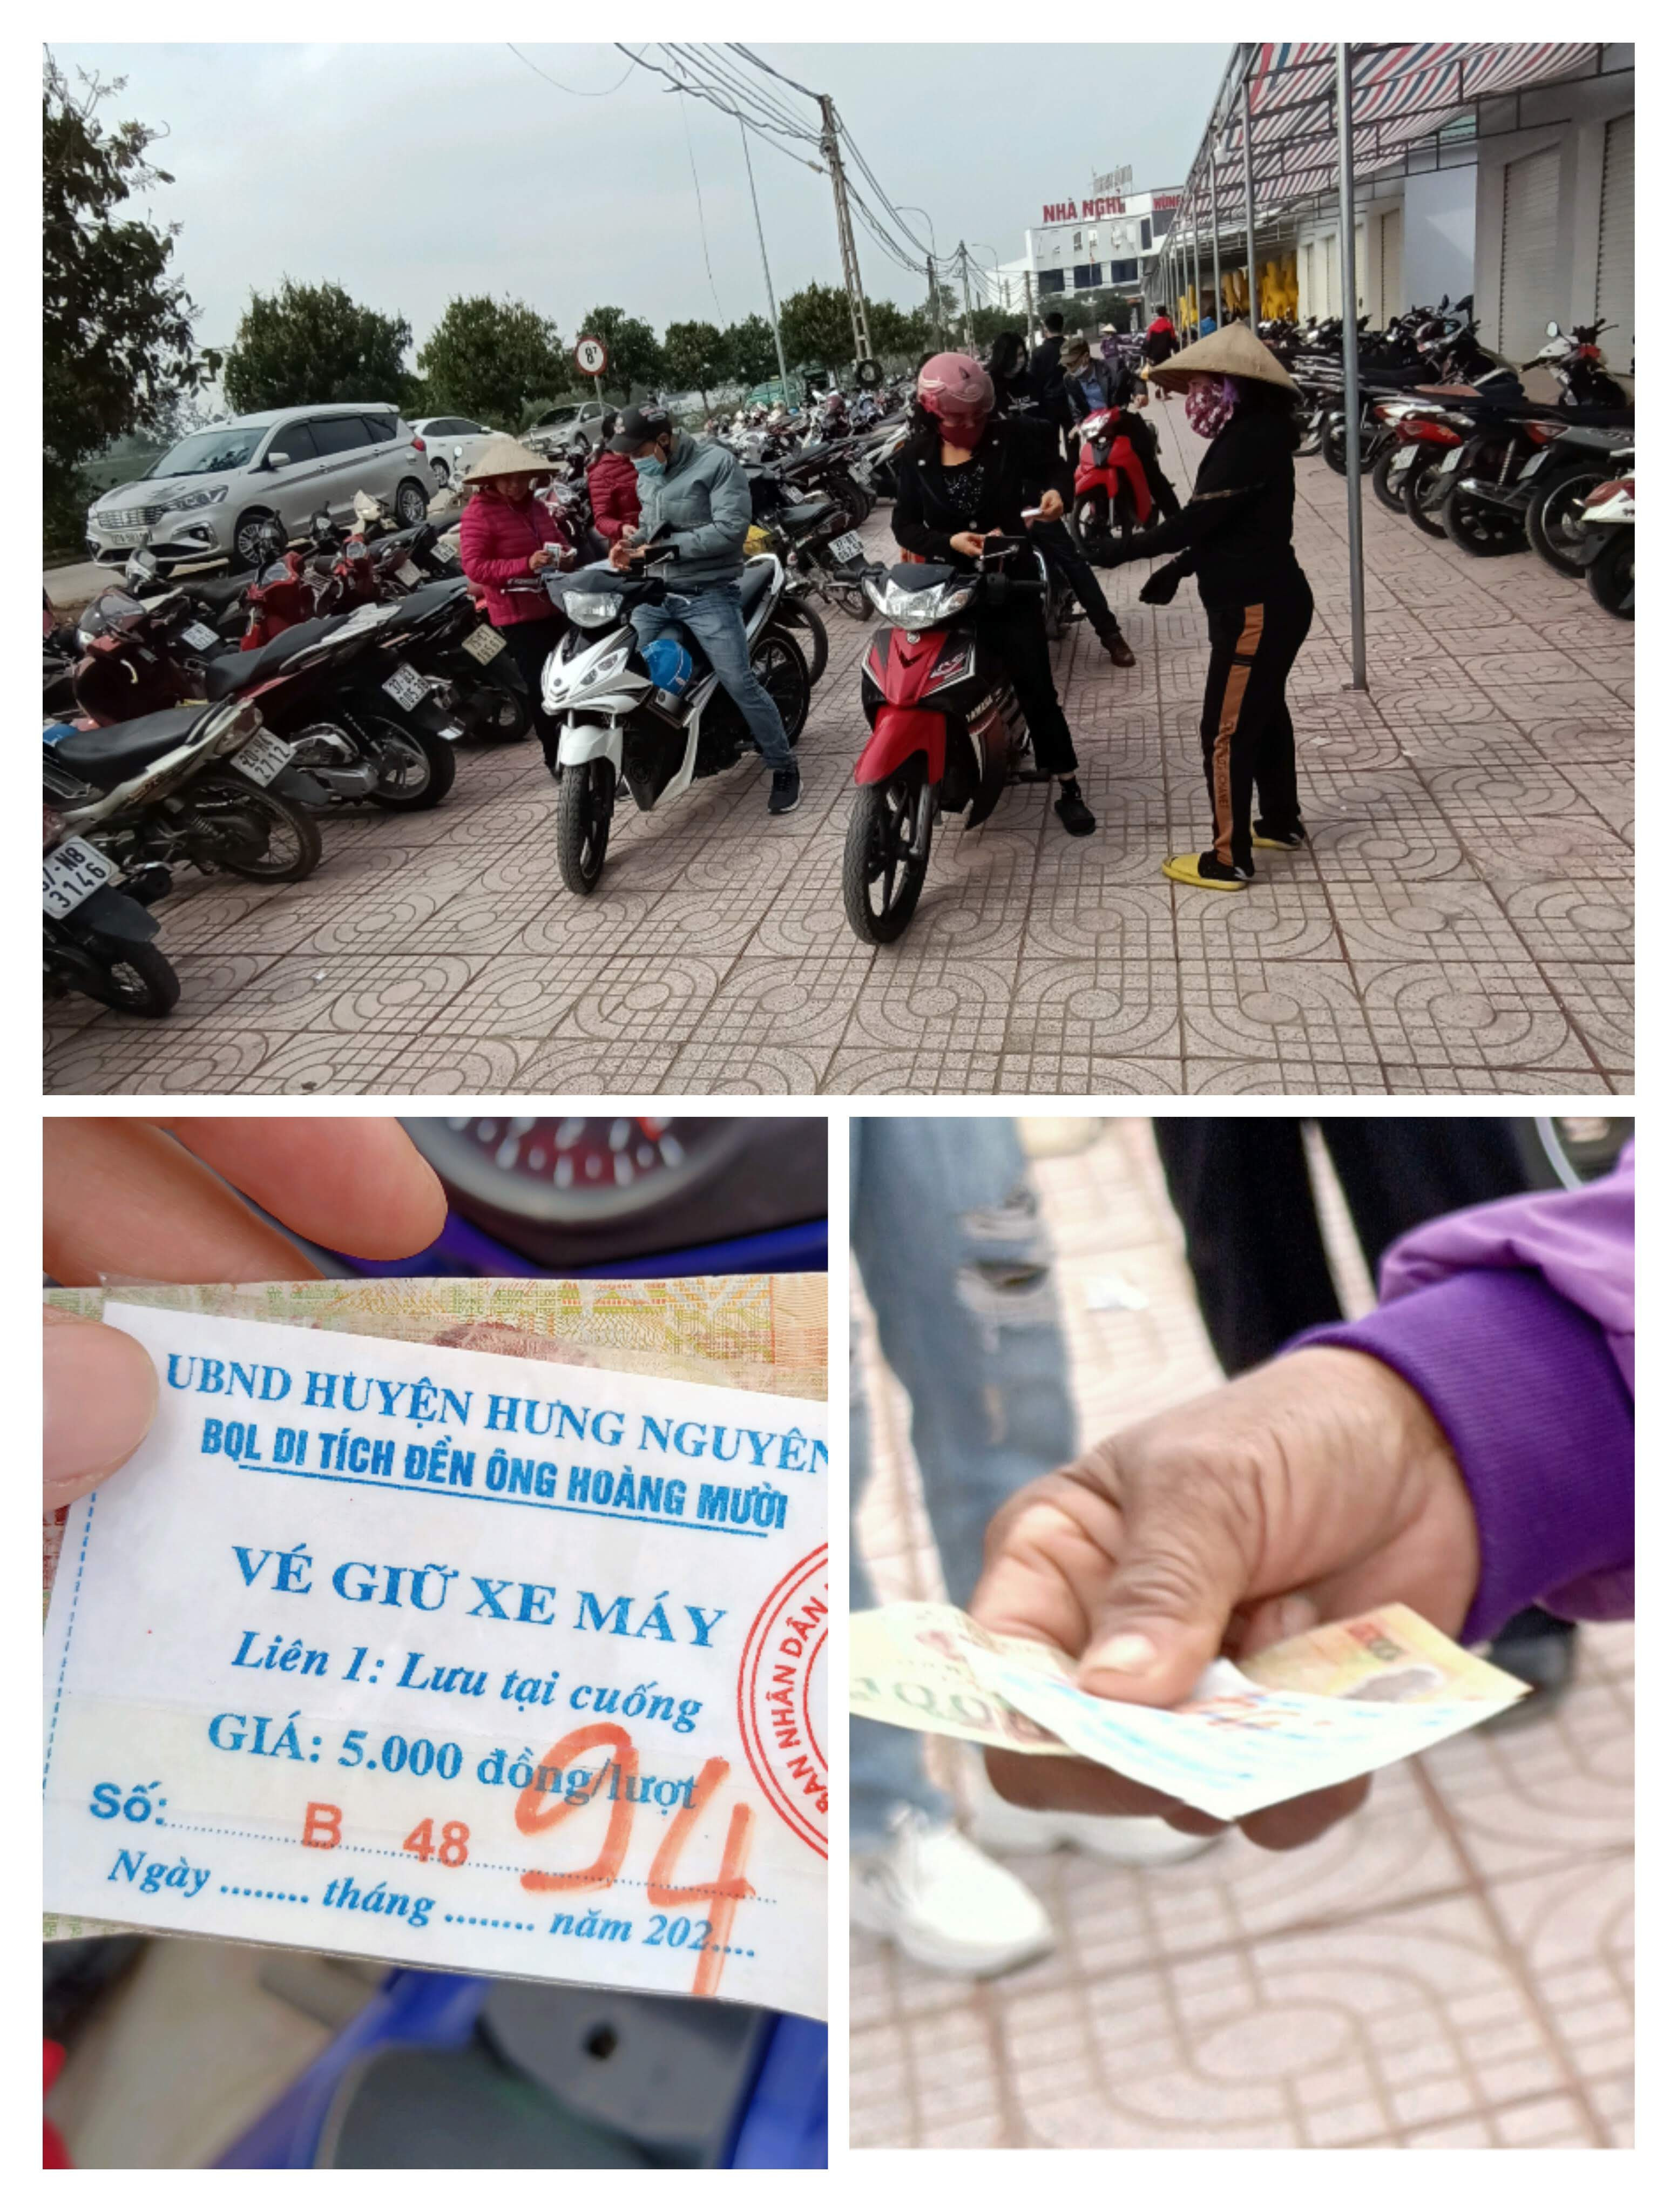 Mặc dù trên vé xe máy tại bãi gửi xe của đền ông Hoàng Mười ghi một lượt gửi là 5.000 đồng, tuy nhiên trên thực tế điểm trông giữ xe này thu của khách 10.000 đồng. Ảnh: PV